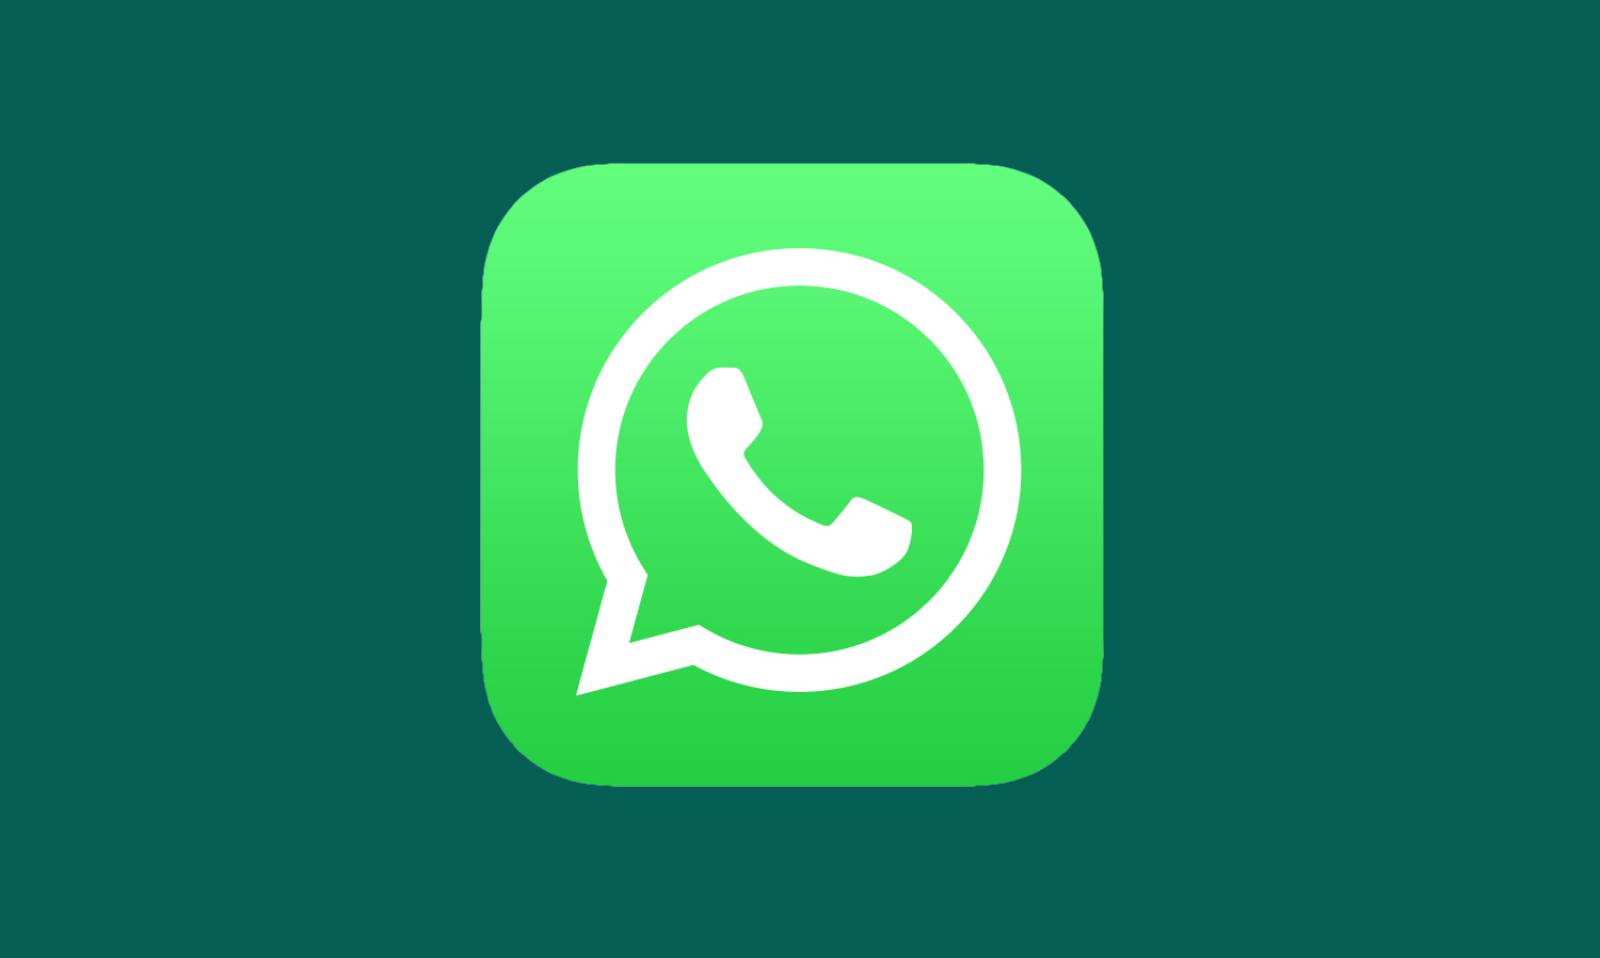 WhatsApp tonuri